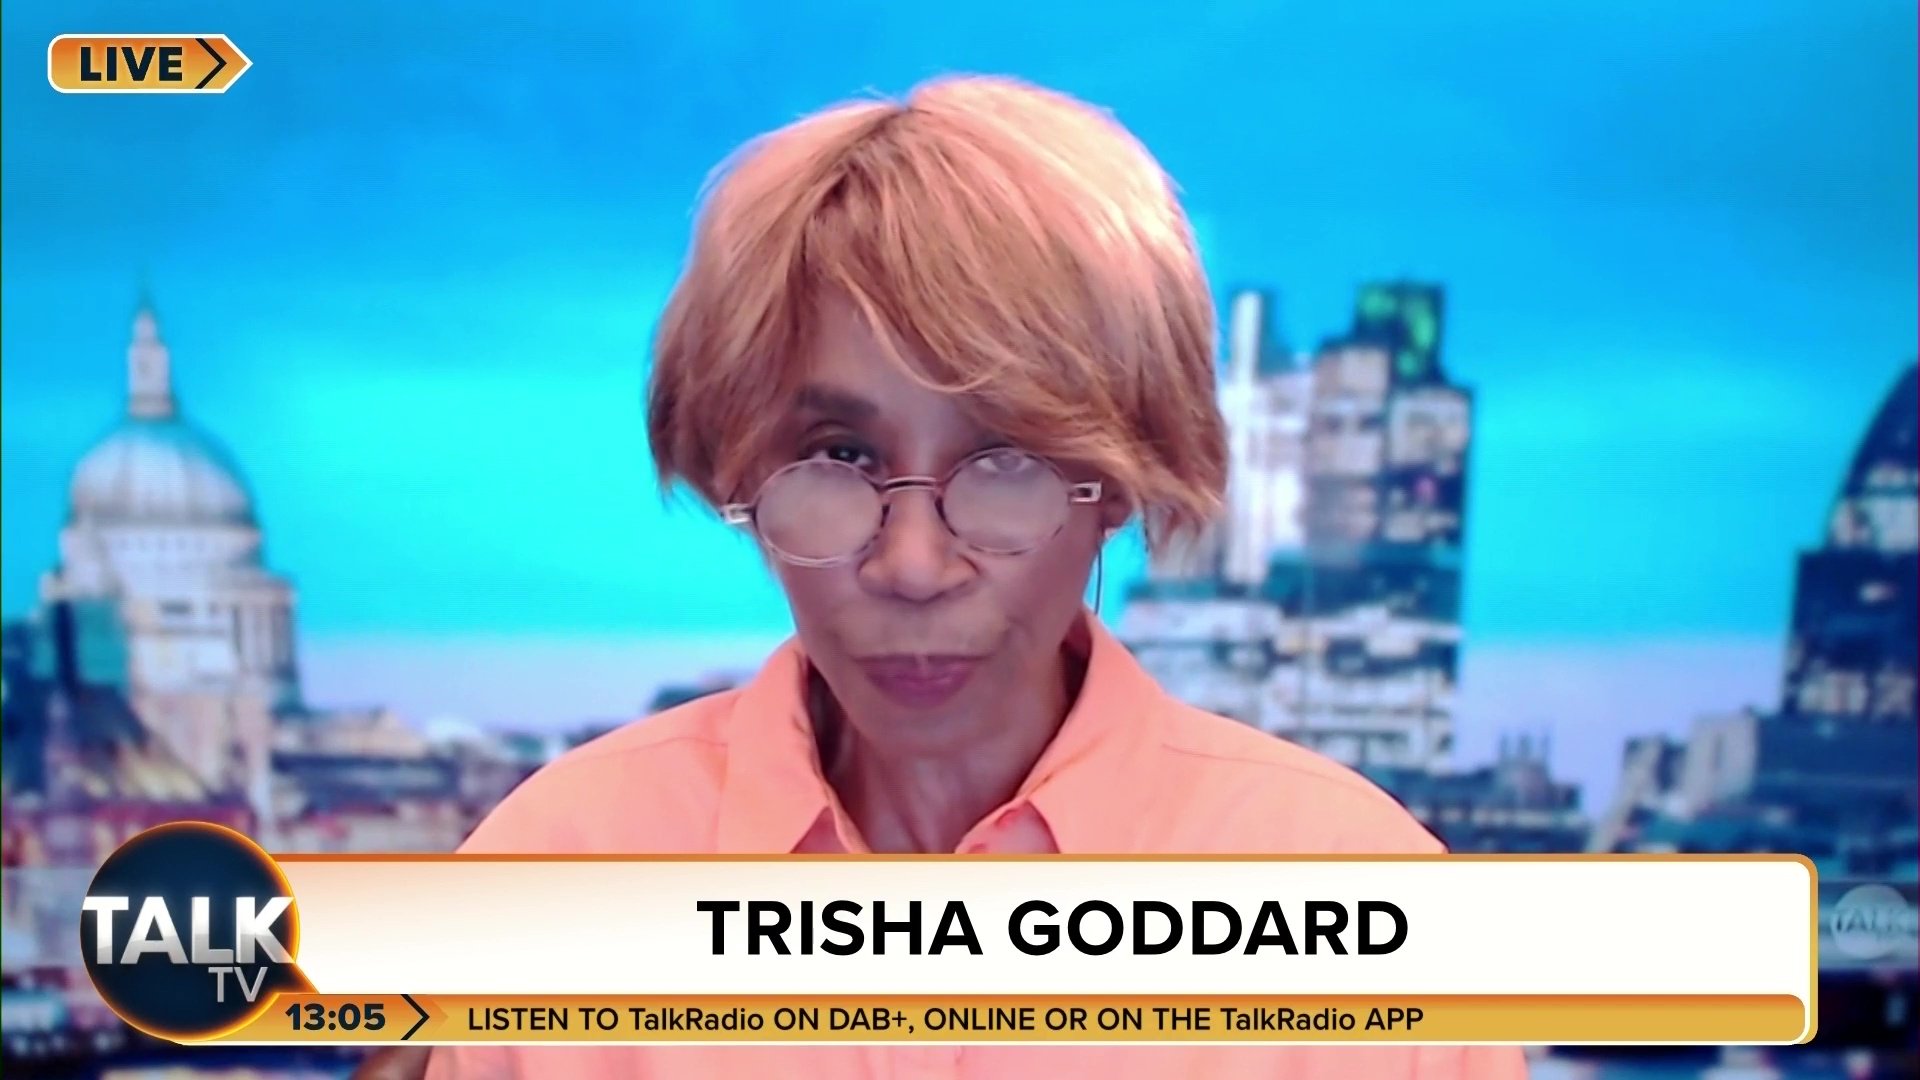 Trisha Goddard on TalkTV